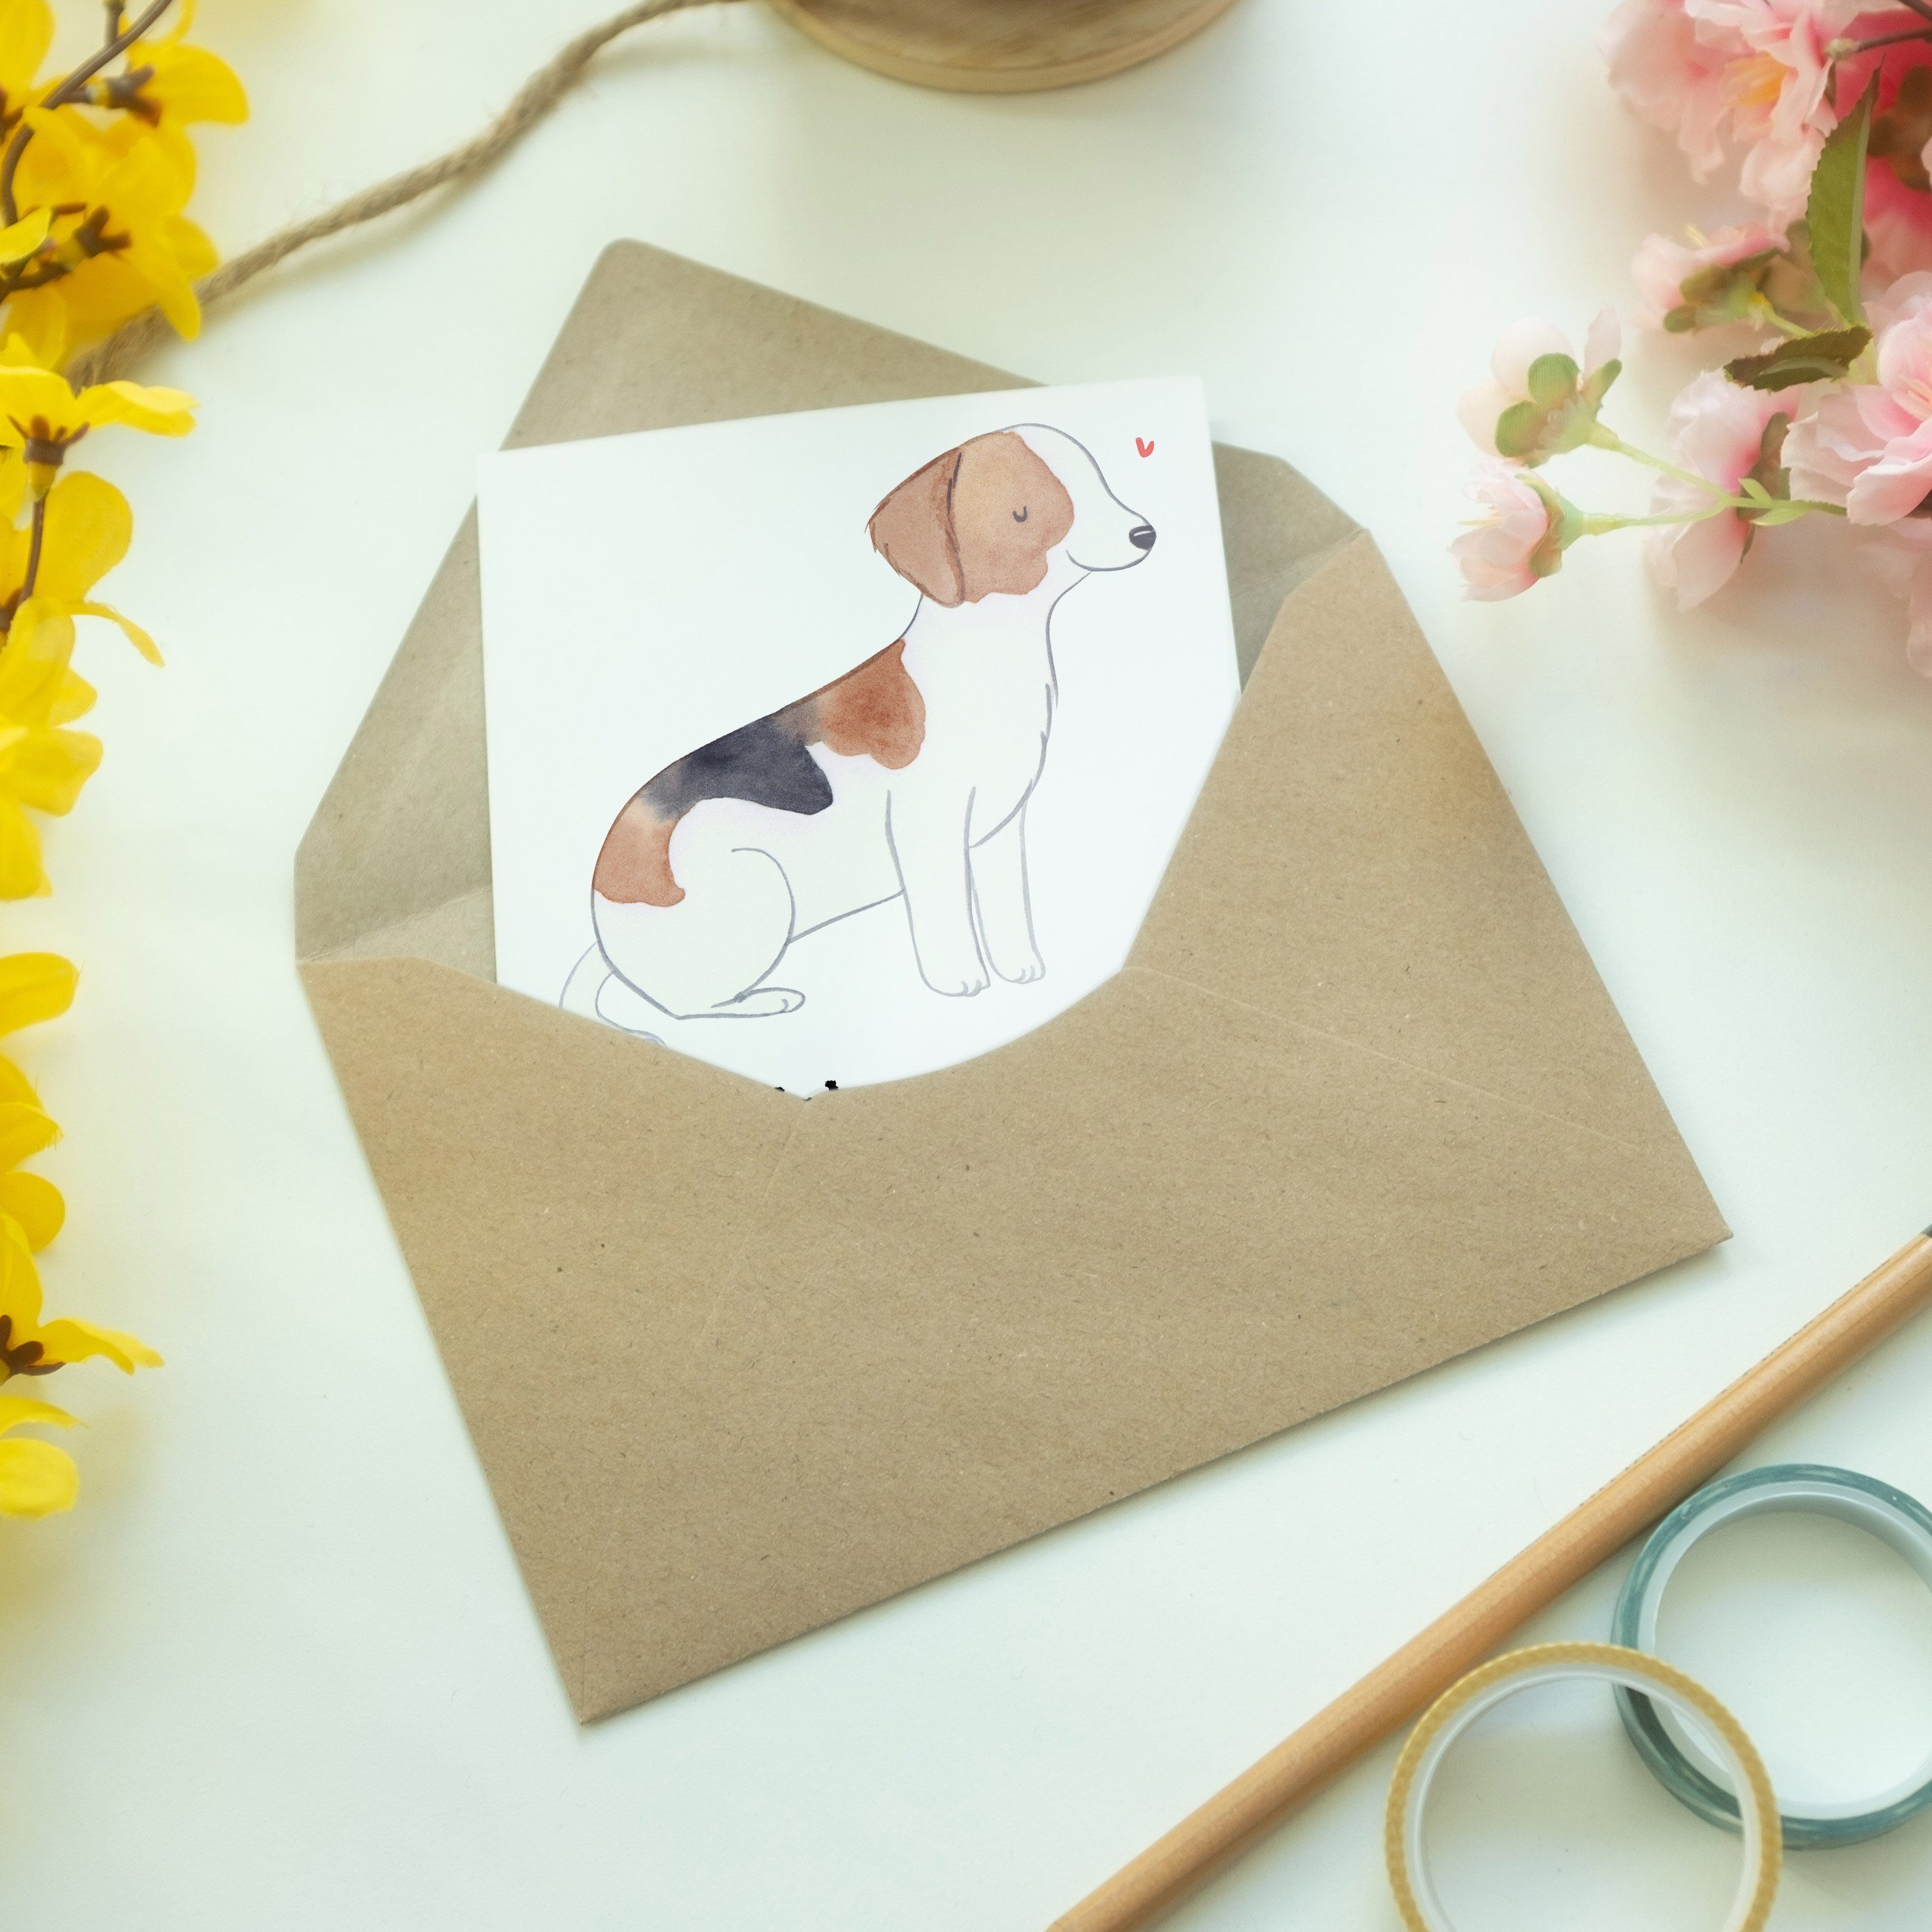 Moment - Glückwunschkarte Weiß Grußkarte Foxhound - Mrs. & Hochzeitskarte, Mr. Geschenk, Panda